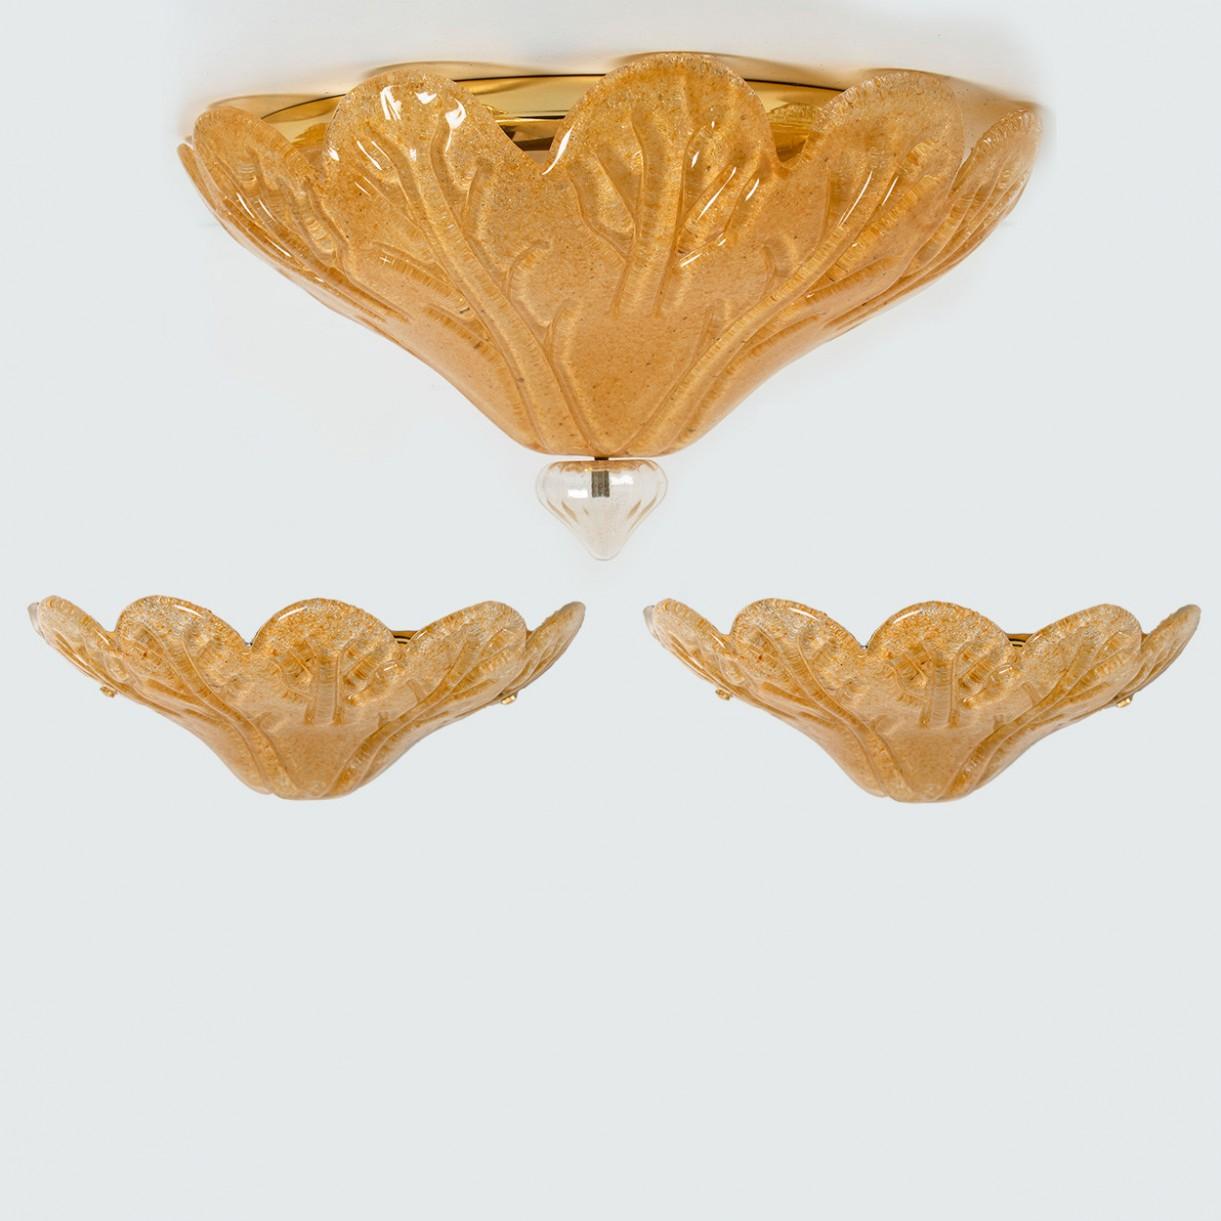 Satz von drei eleganten mundgeblasenen Murano-Glasleuchten von Vistosi, Italien, 1970er Jahre.

Bündiger Einbau:
Das blattförmige Glas ist goldgesprenkelt und hat einen klaren 